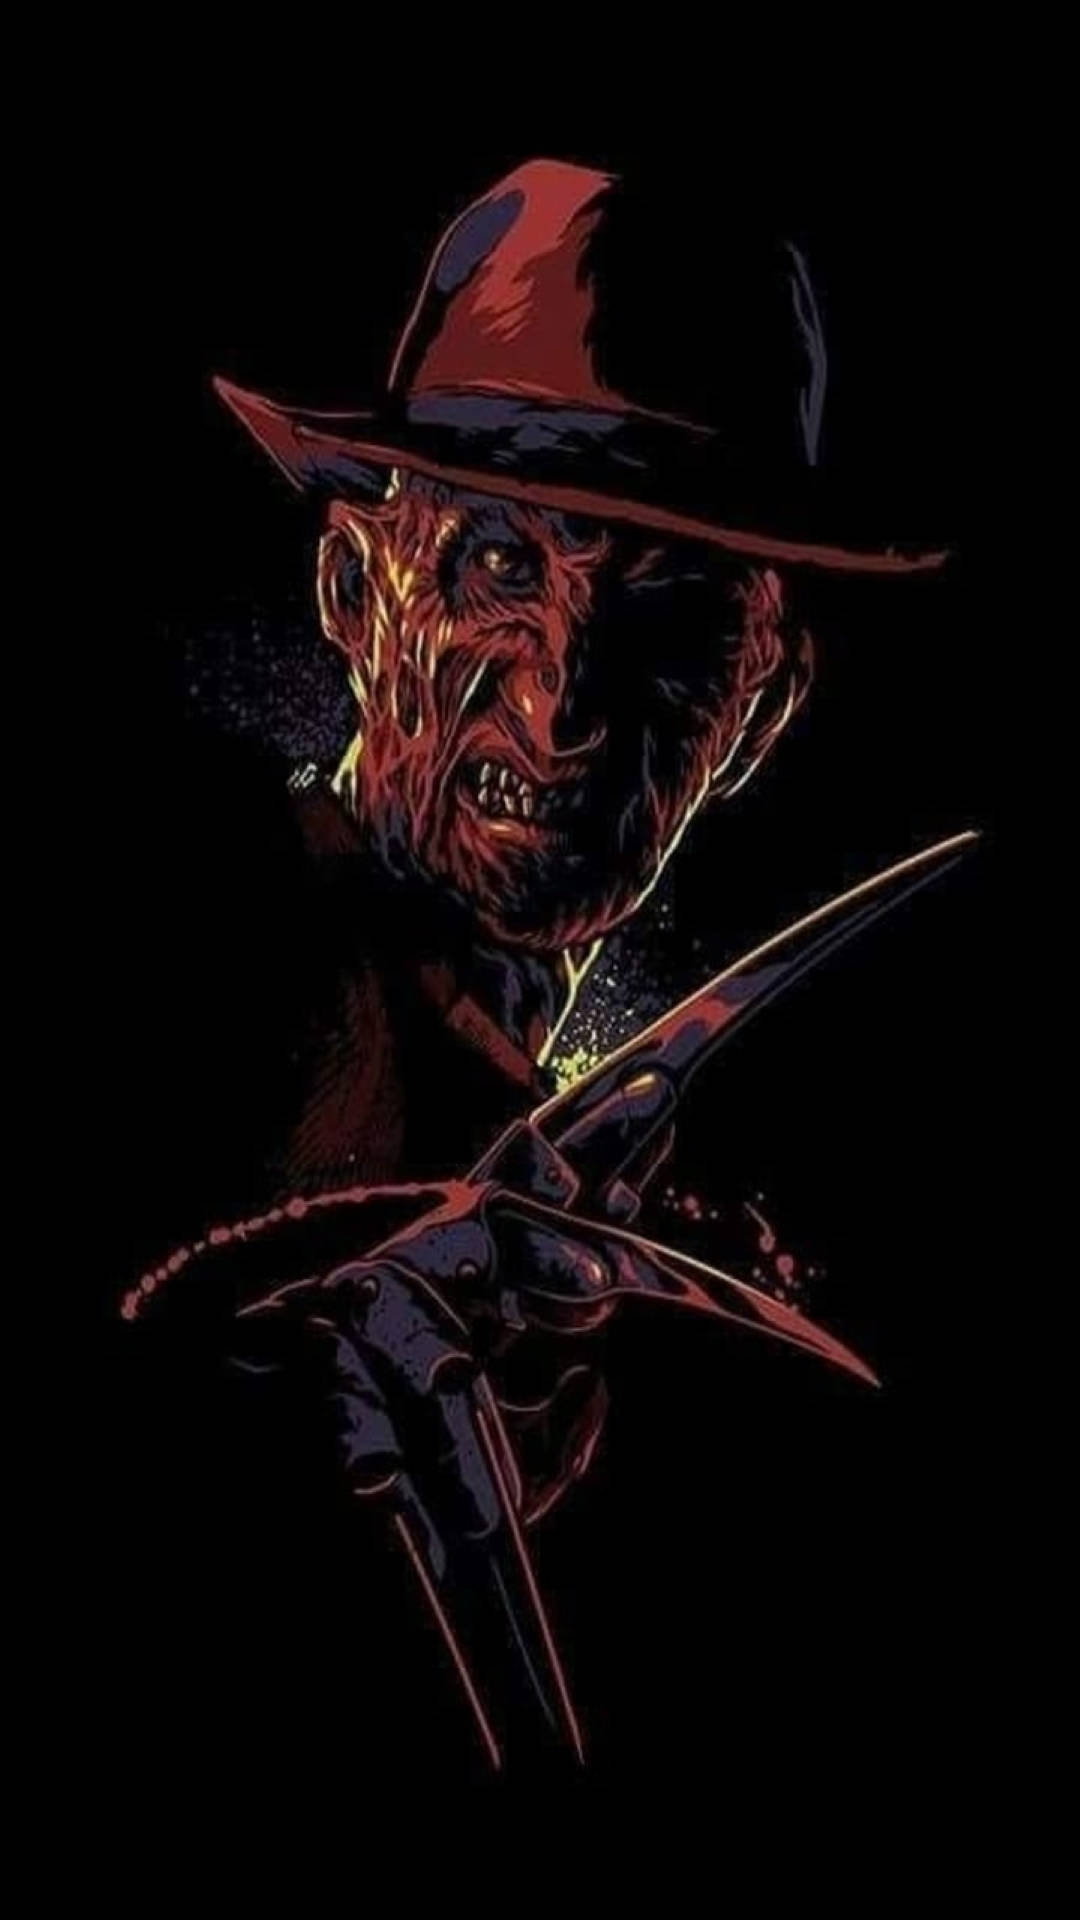 Intimidating Freddy Krueger in a dark setting Wallpaper